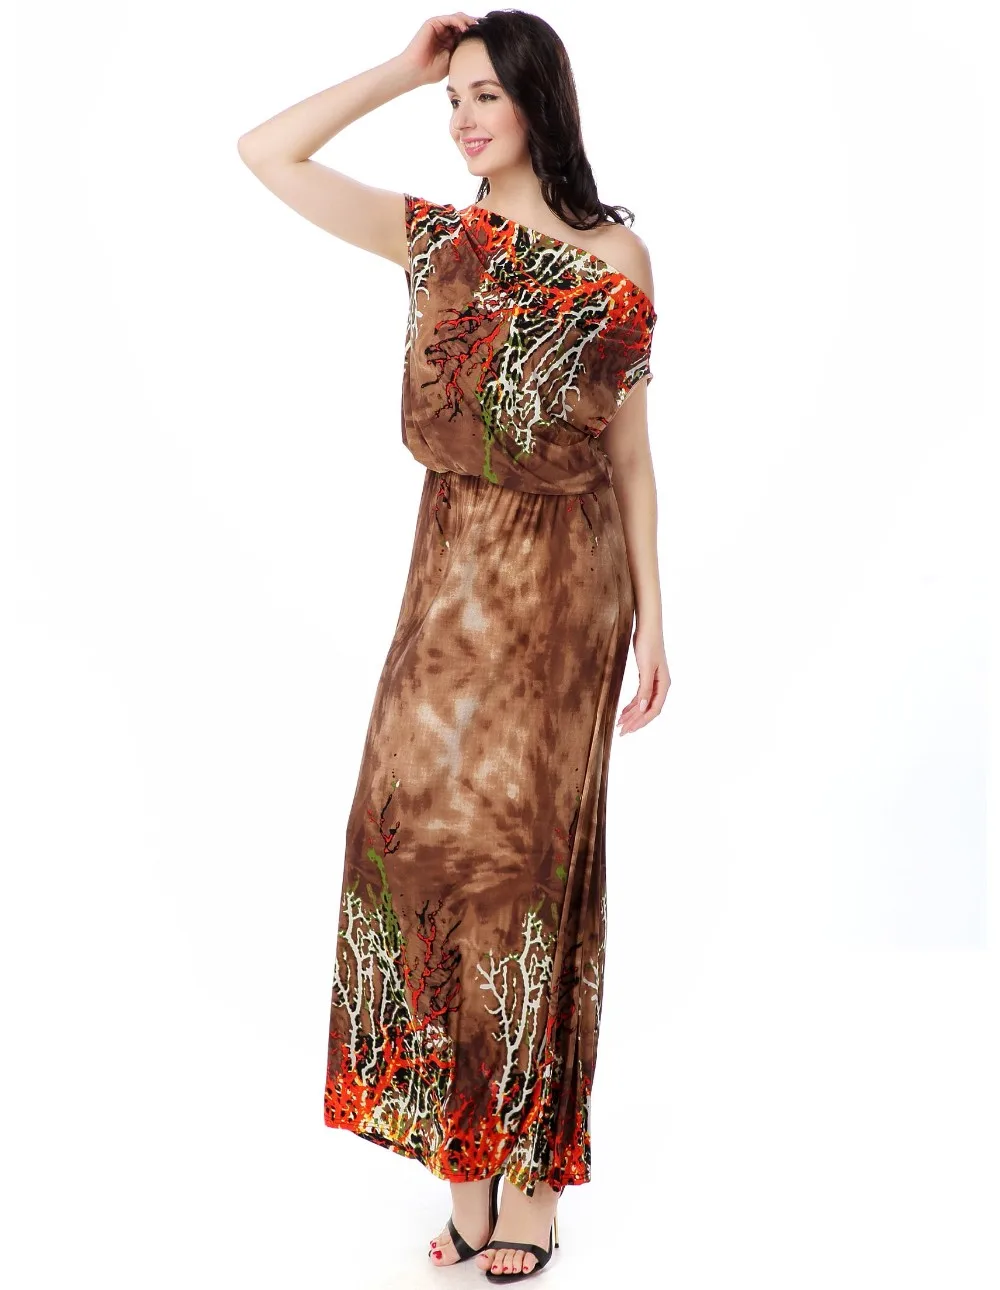 Женщины платья лета V шеи безрукавный года бохо красное платья больших размеров 5XL 6XL Лонг-Бич платье сарафан